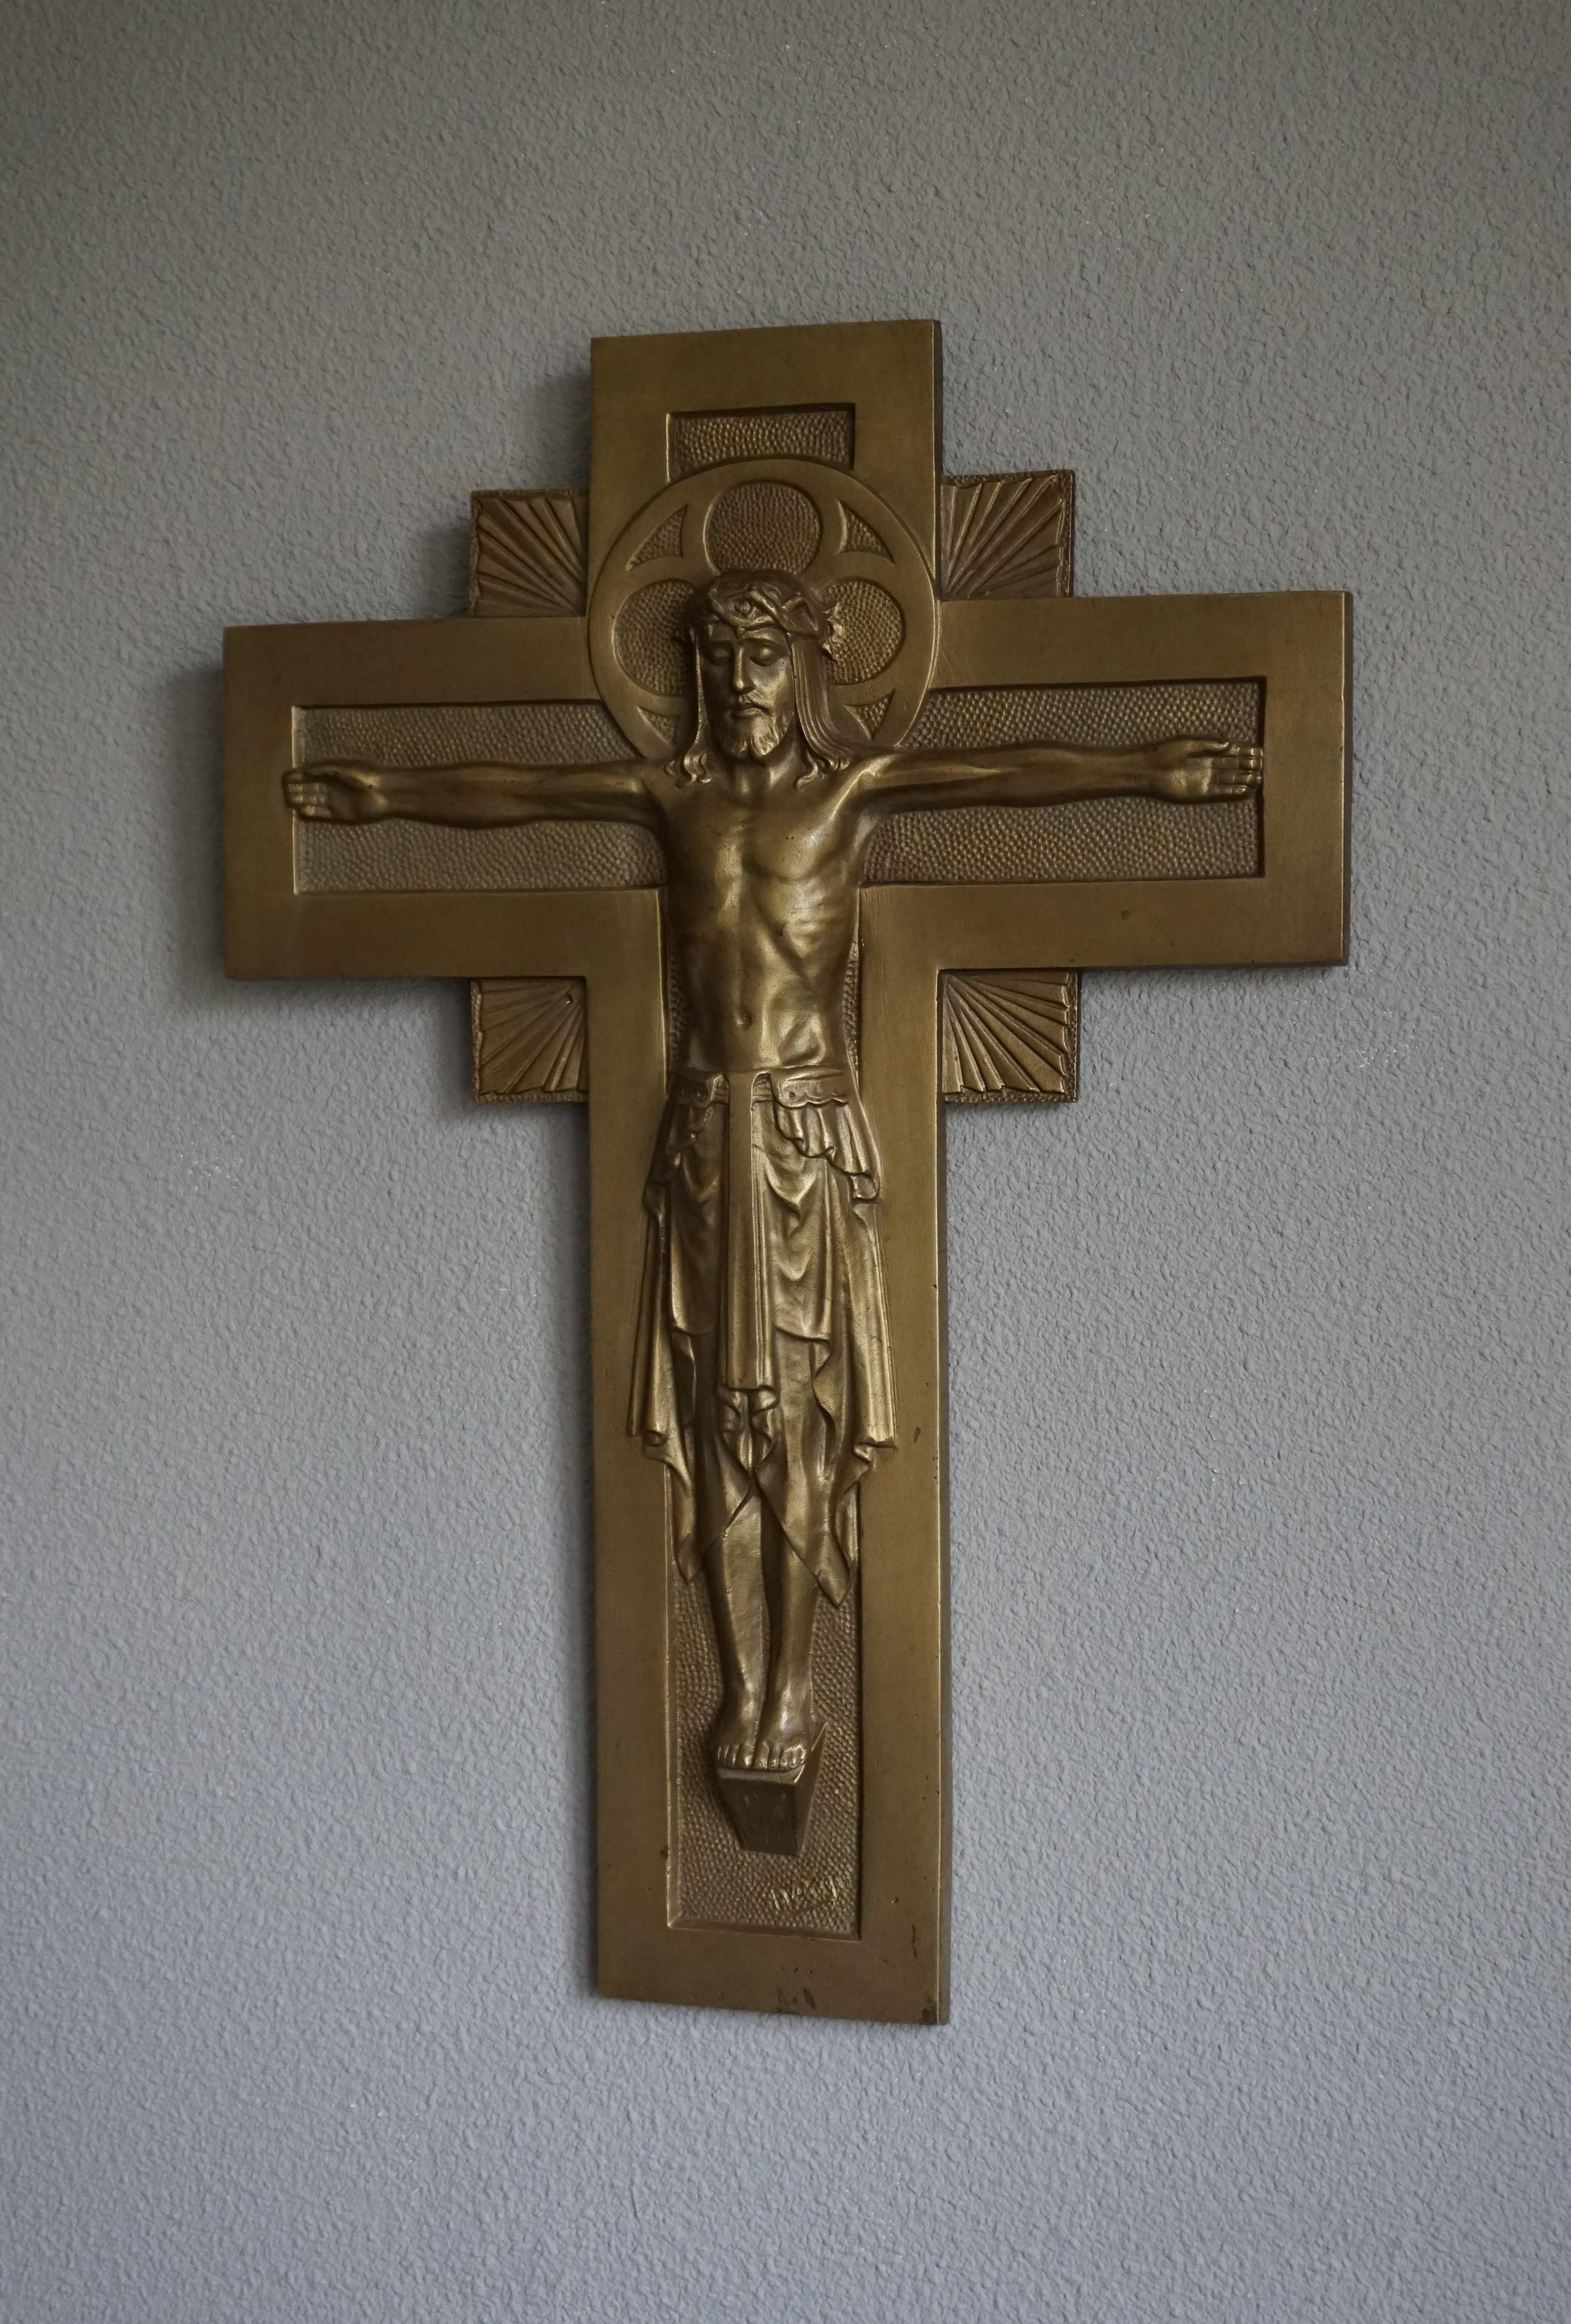 Rare et beau Christ en bronze avec une auréole gothique. 

Certains crucifix sont accompagnés de sculptures du Christ dans une terrible agonie:: mais le visage détaillé sous la couronne d'épines de ce Christ ne reflète rien d'autre que la pièce et